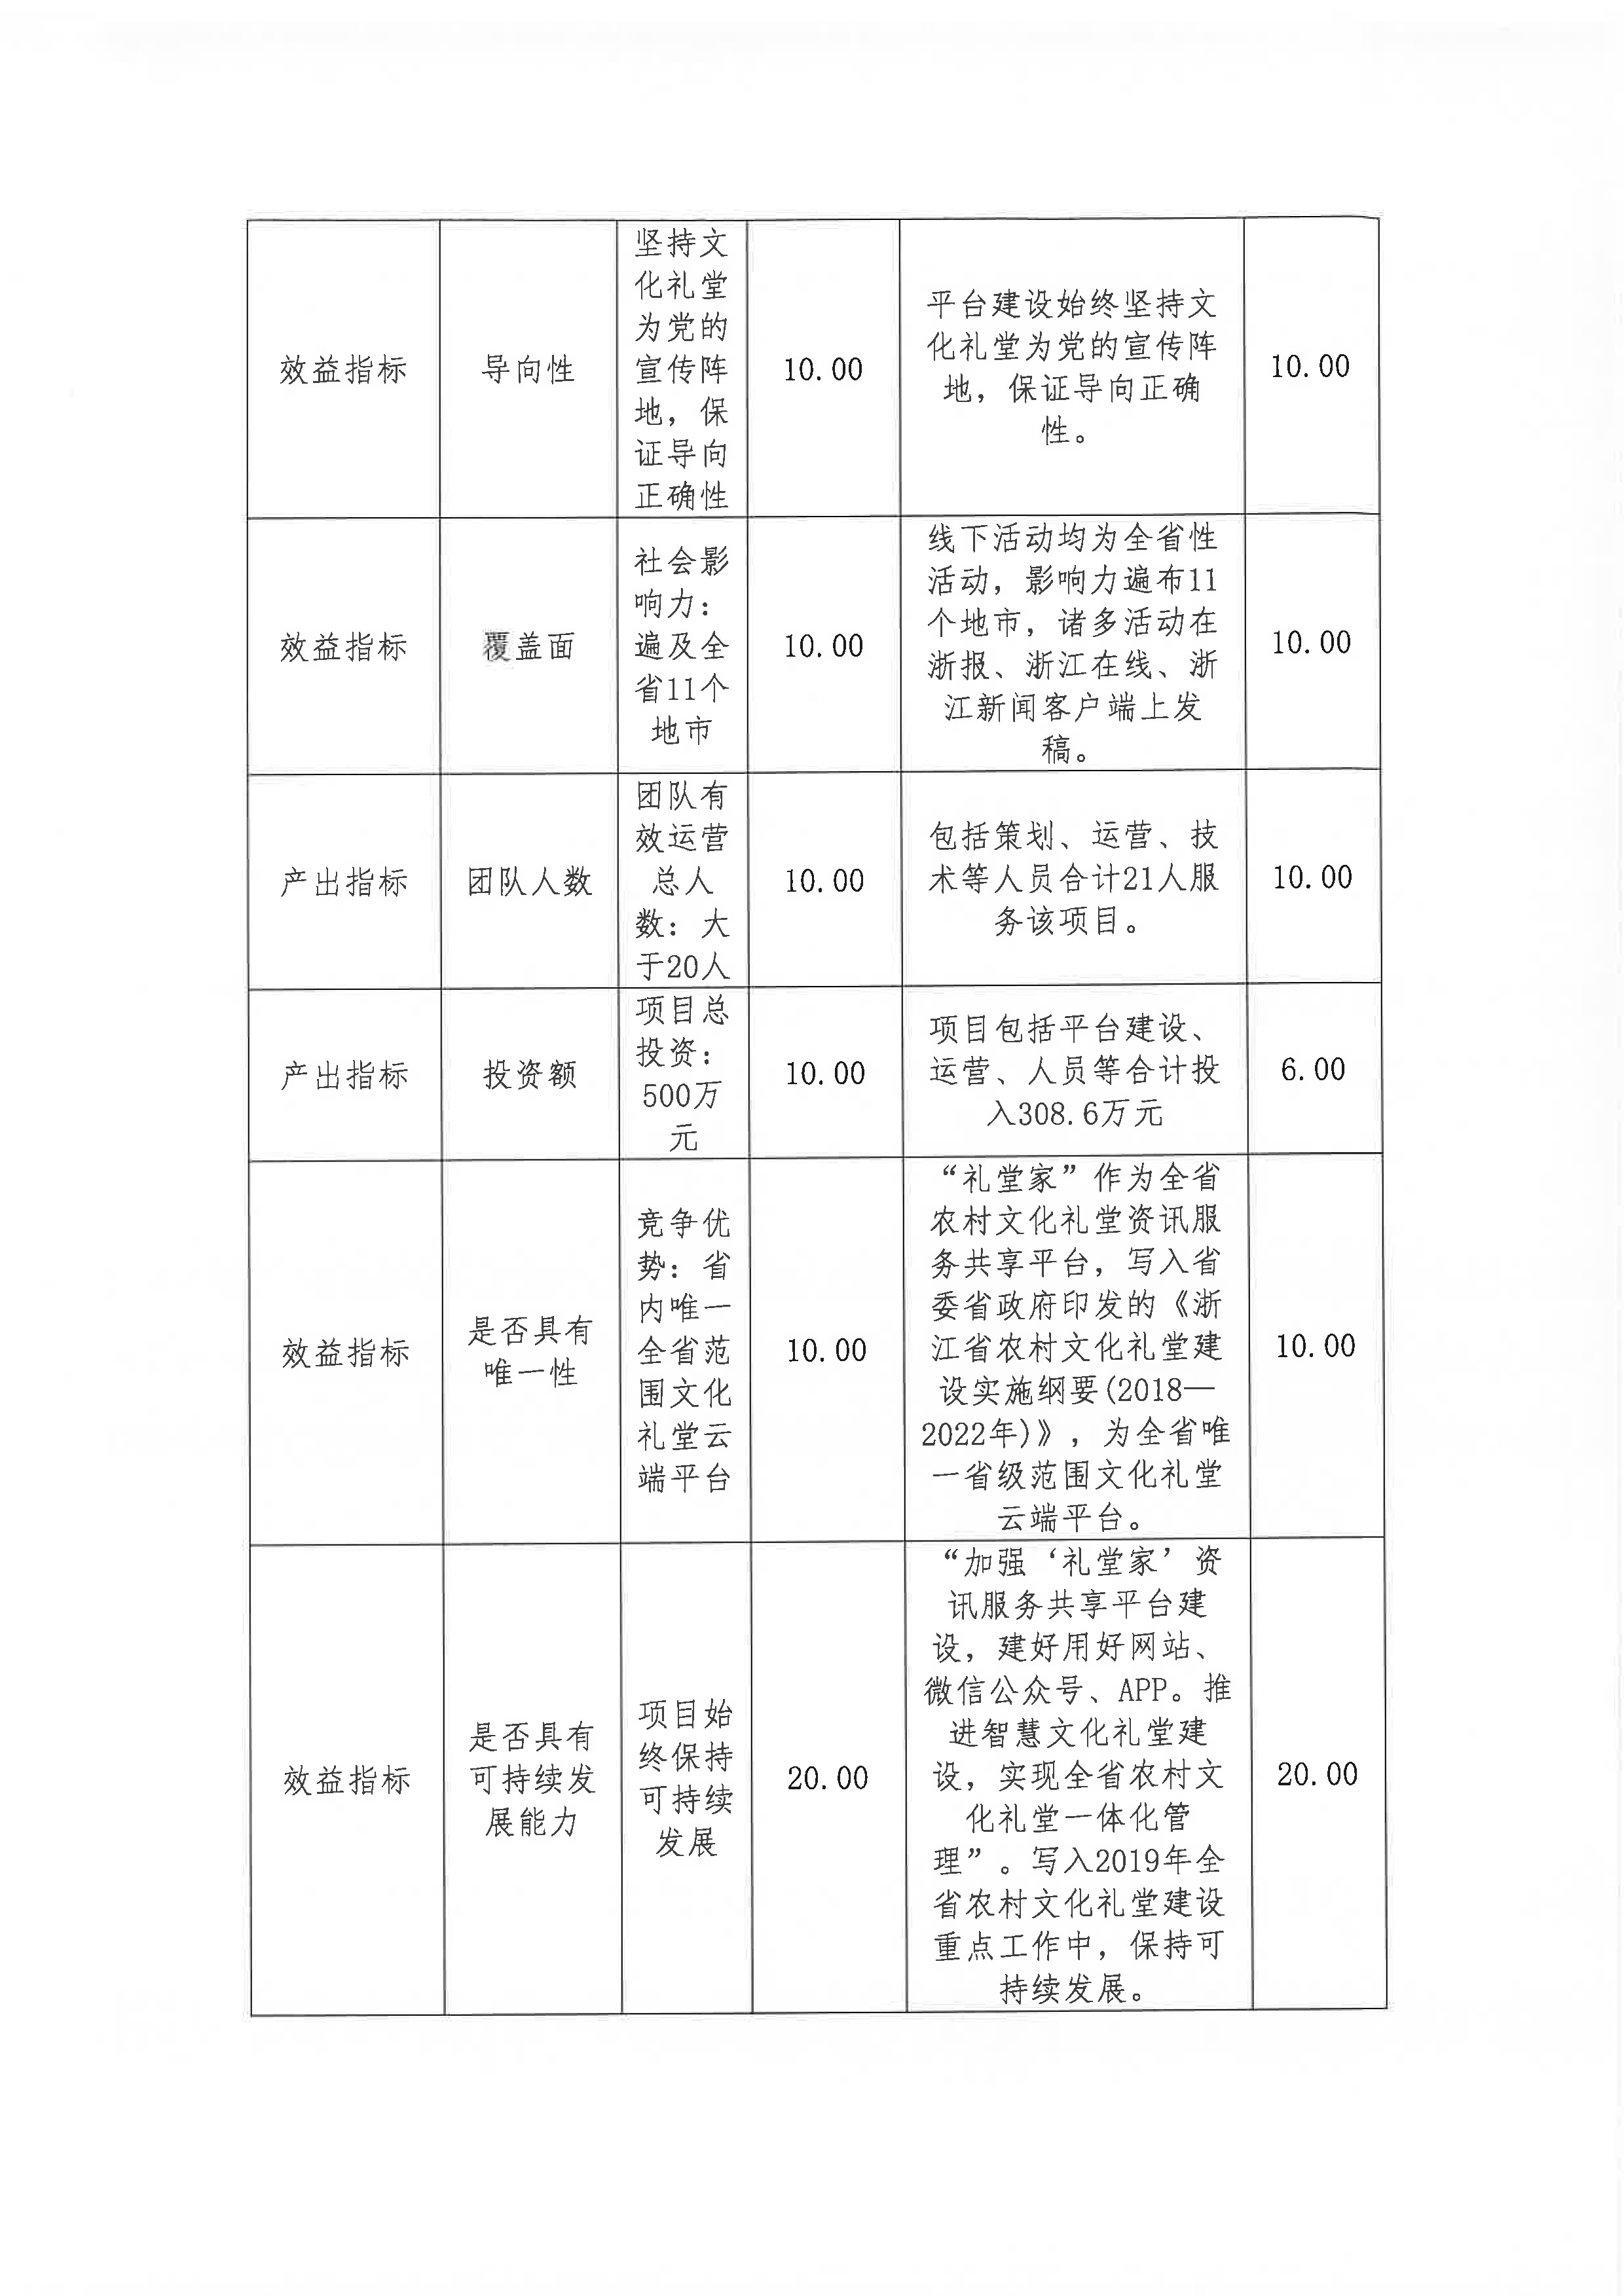 浙报集团2018年部门决算公开（终稿）_页面_10.jpg